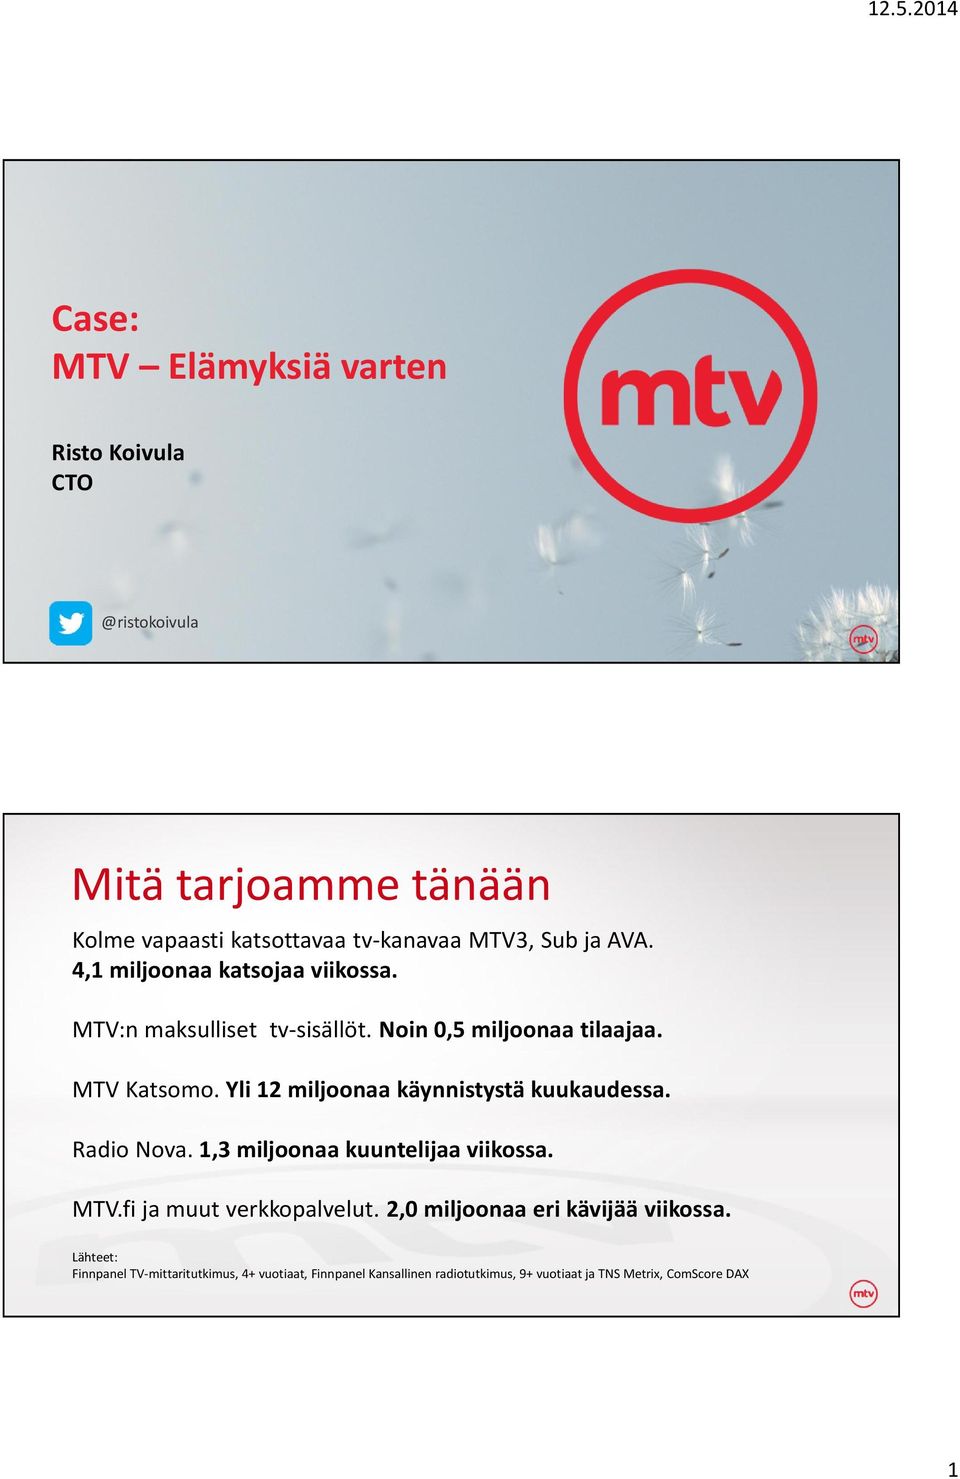 Yli 12 miljoonaa käynnistystä kuukaudessa. Radio Nova. 1,3 miljoonaa kuuntelijaa viikossa. MTV.fi ja muut verkkopalvelut.